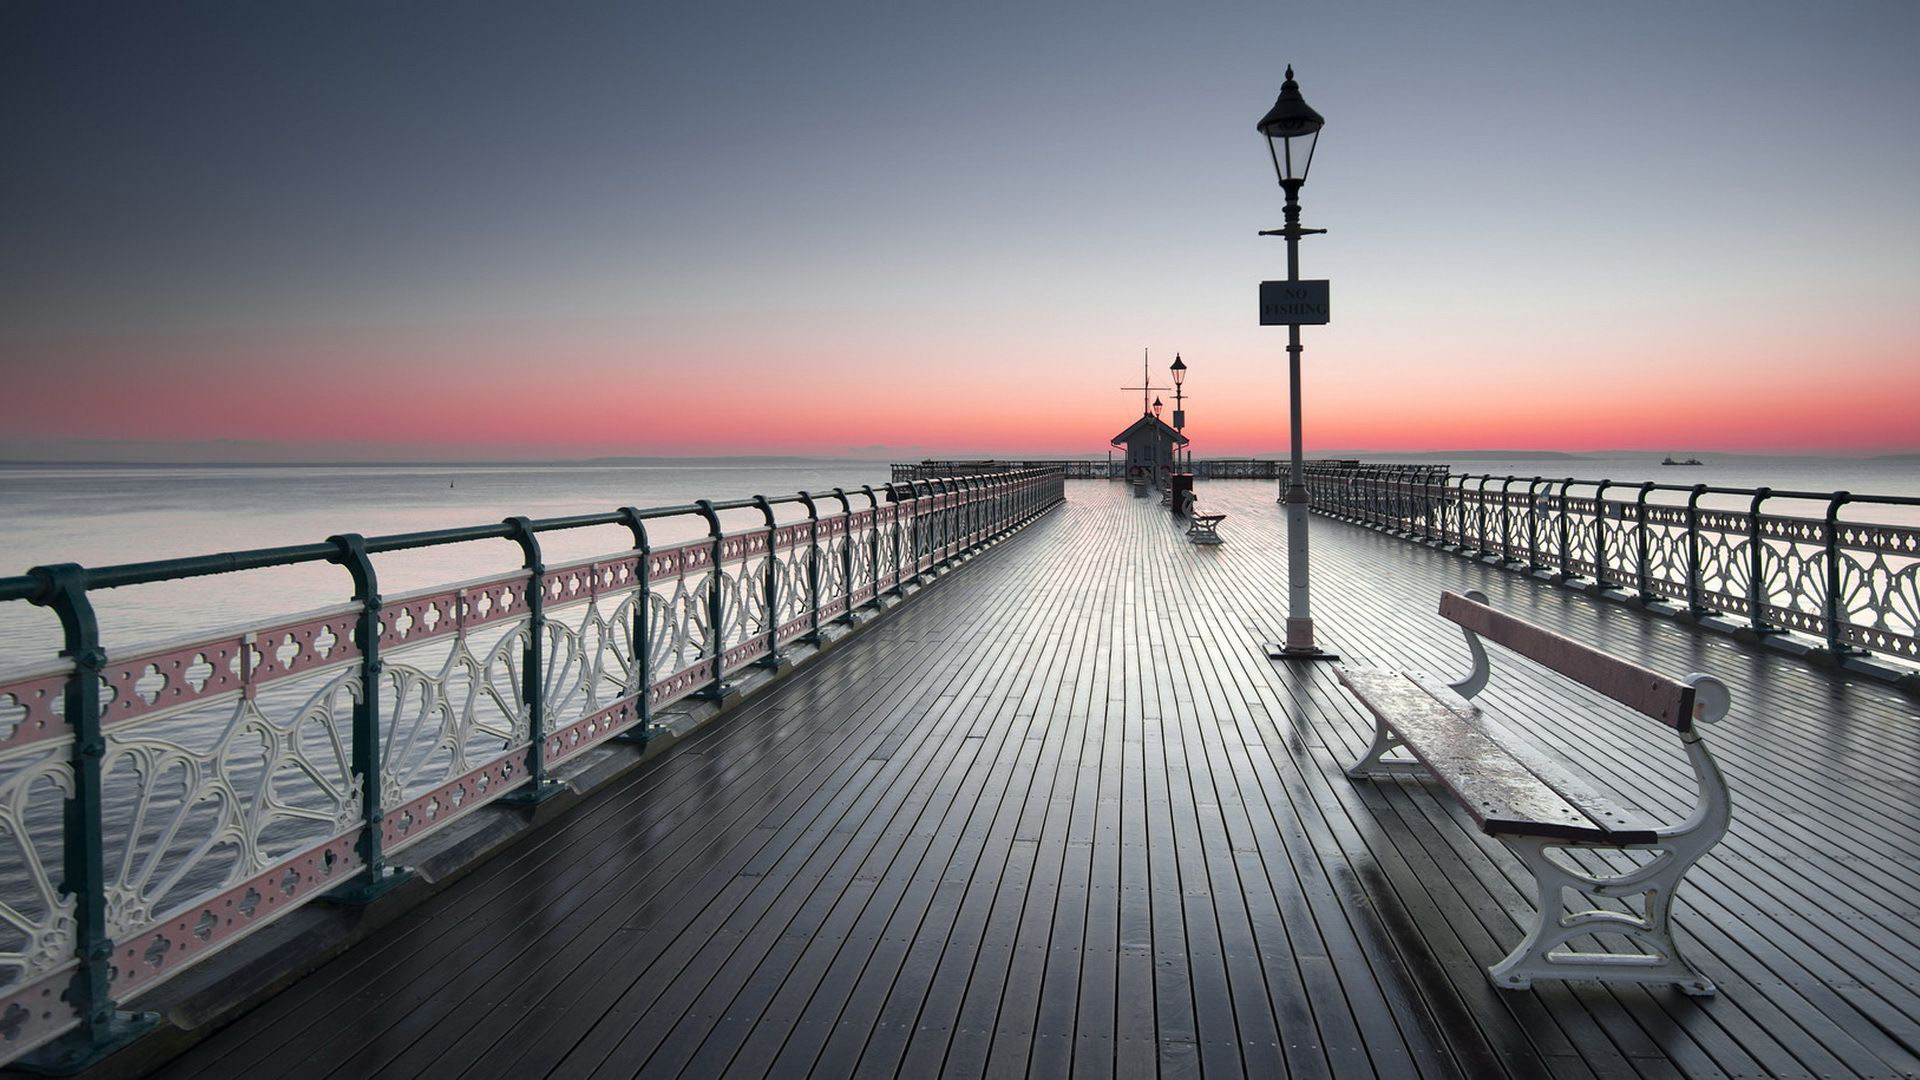 Landscape pier sea sunset | wallpaper.sc iPhoneXS